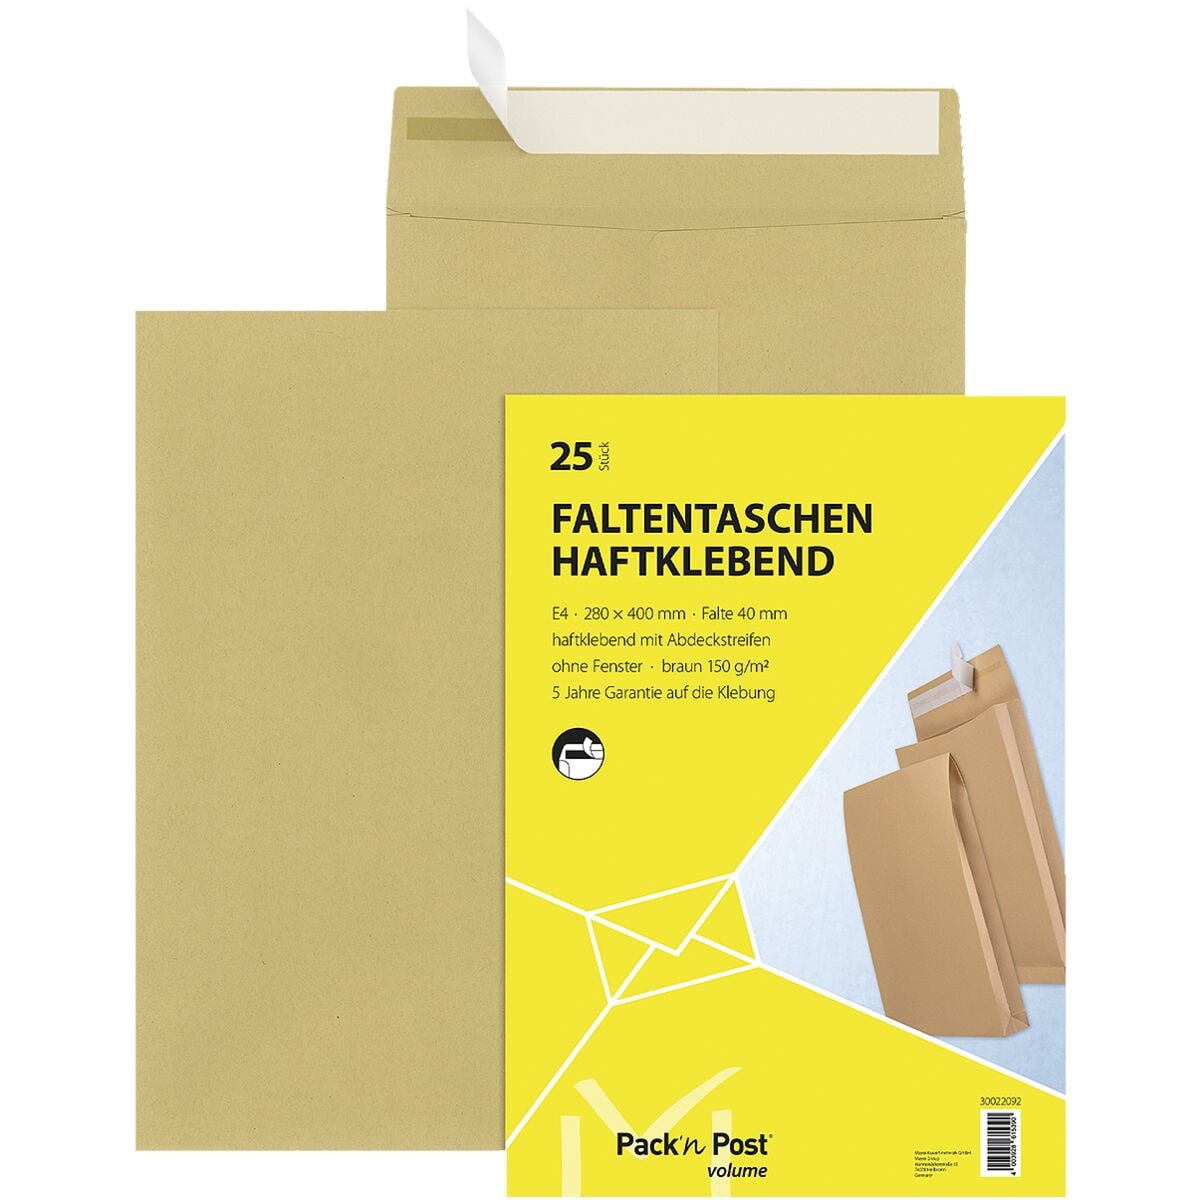 Mailmedia 25 Faltentaschen mit Steh-/Klotzboden, E4 ohne Fenster